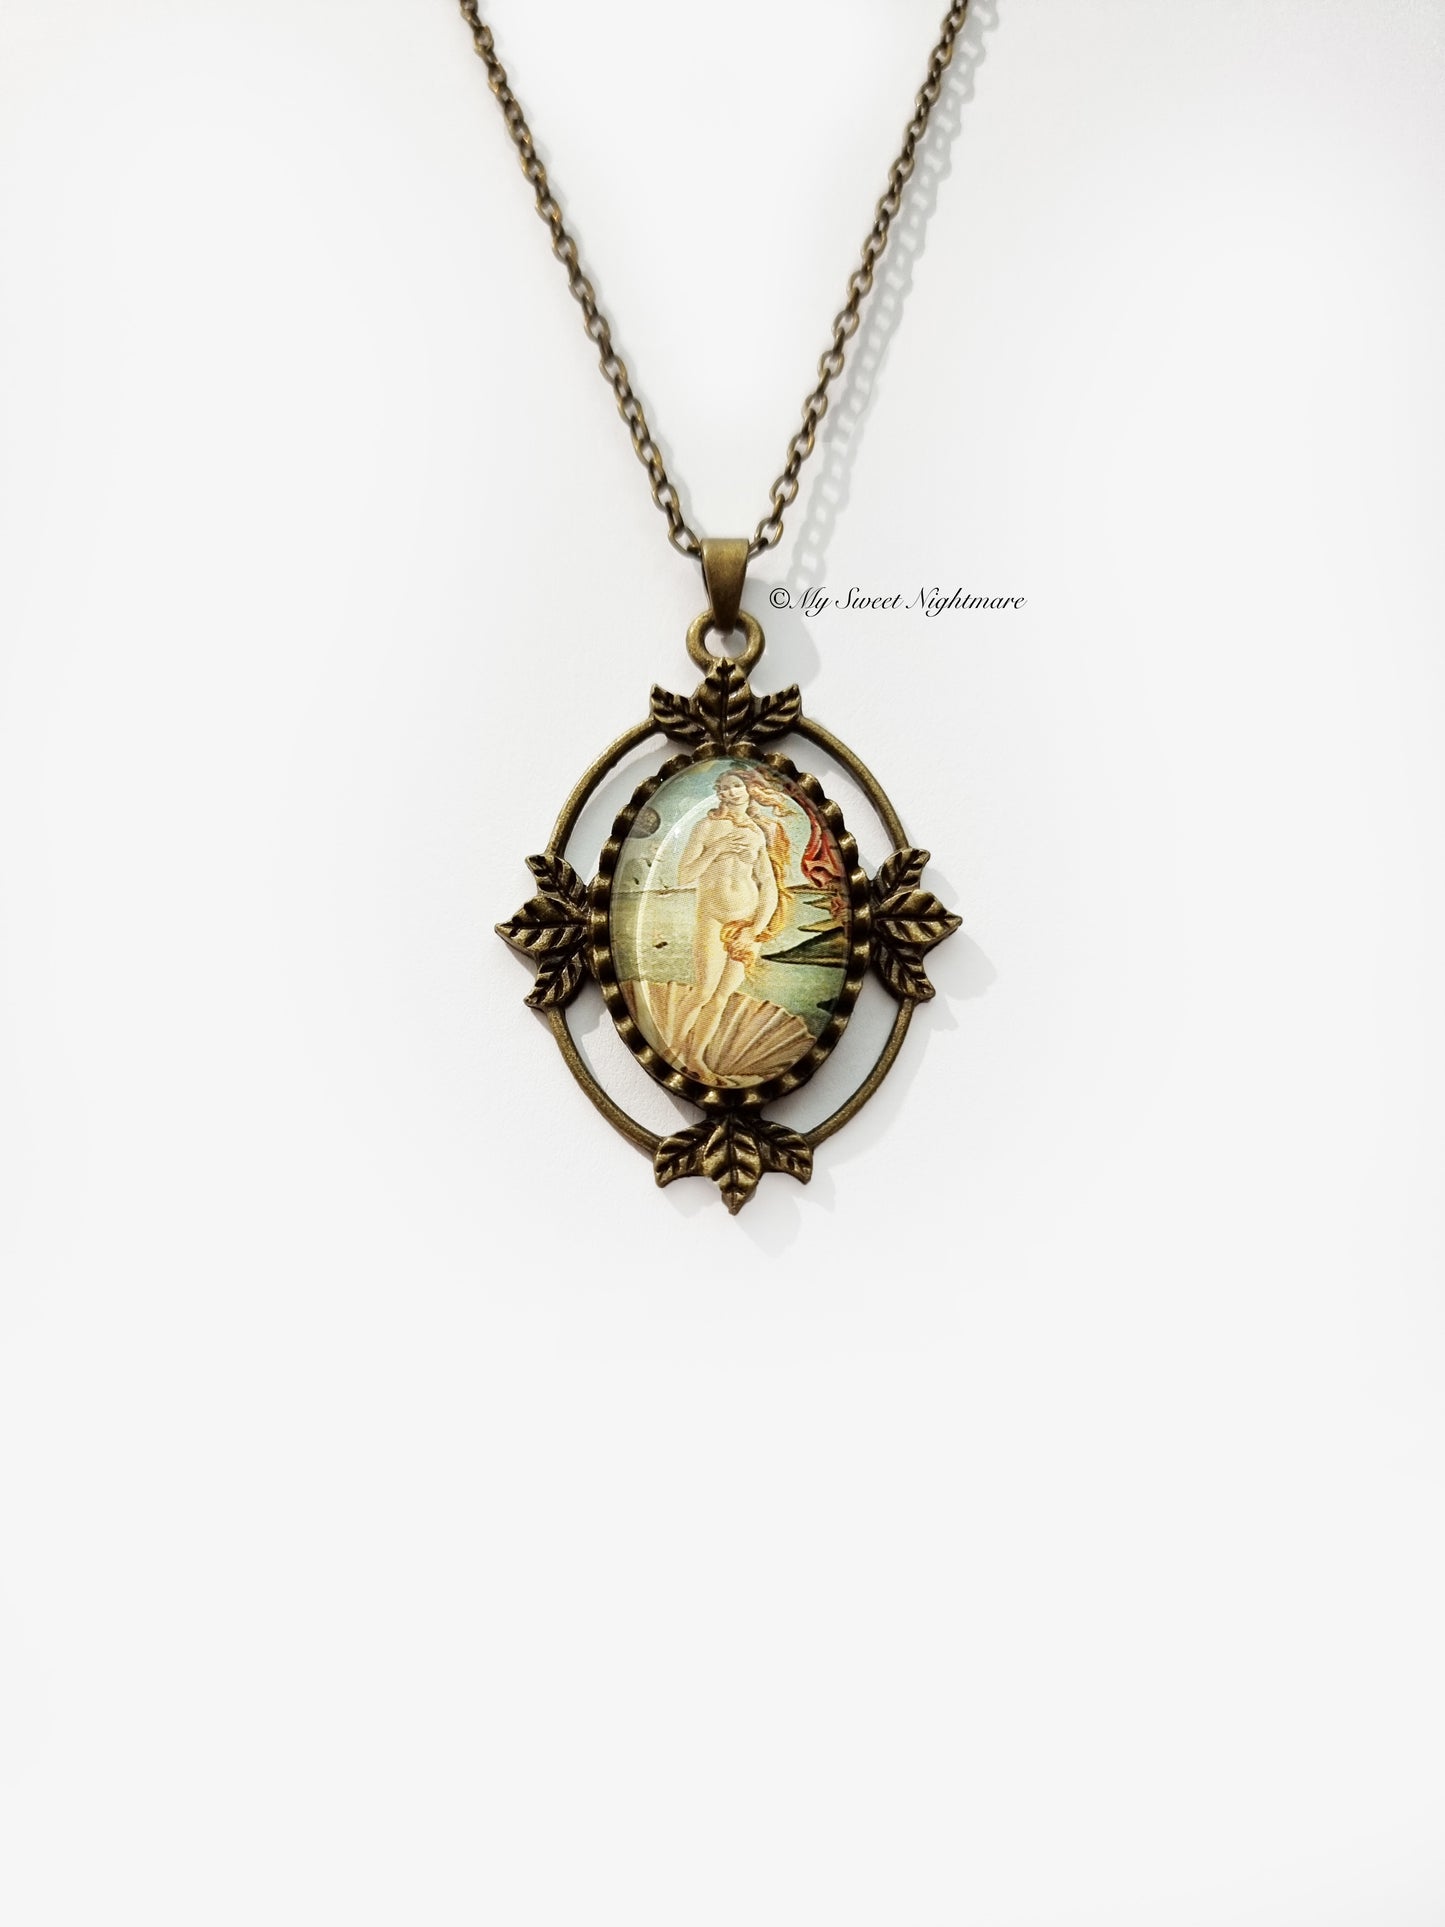 Necklace "Birth of Venus"